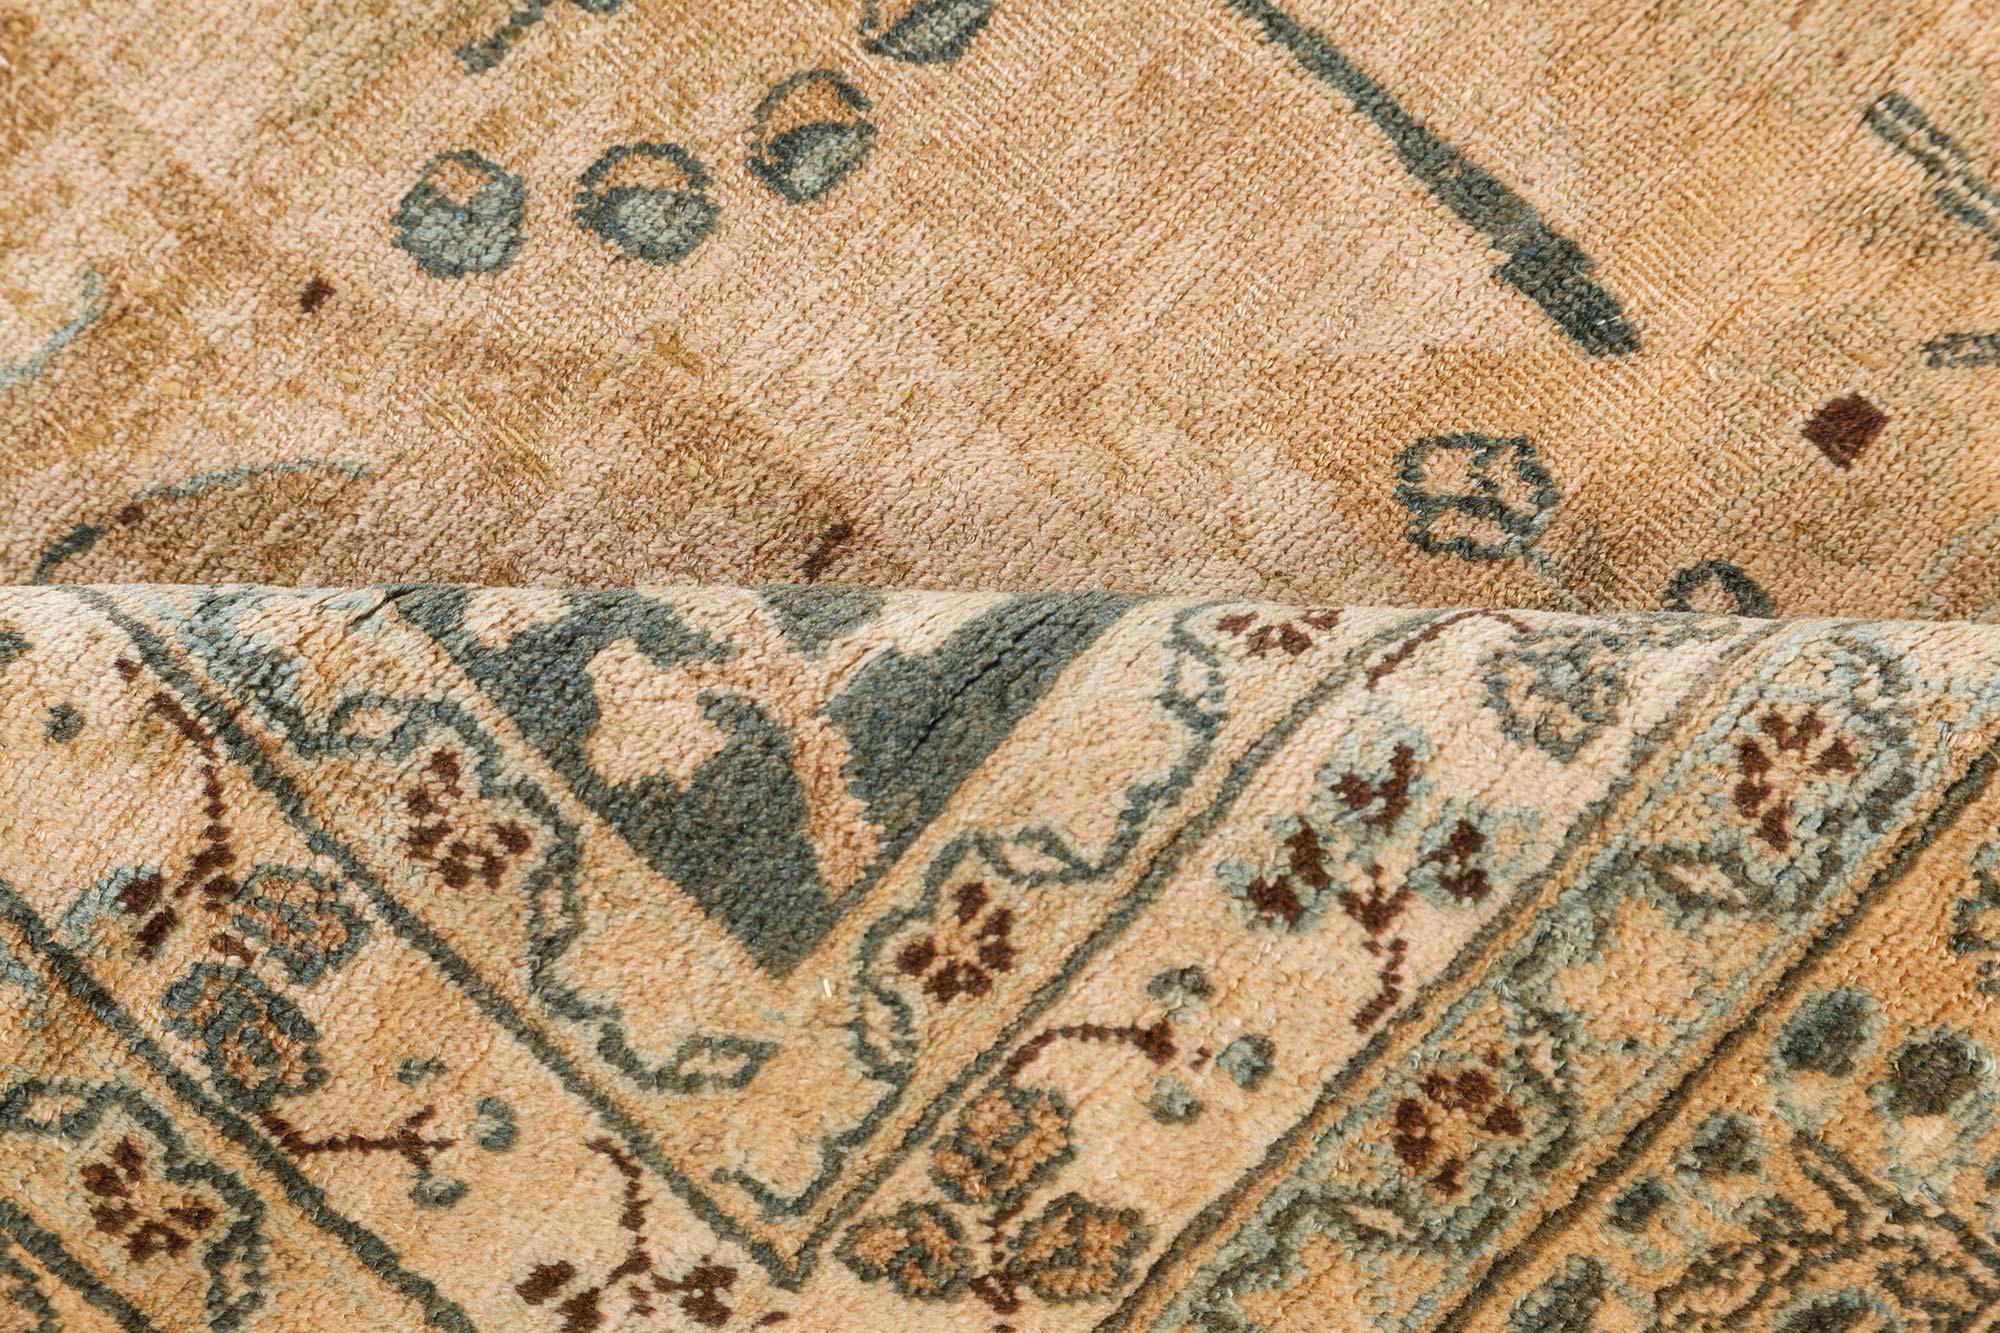 Antique Persian Meshad carpet
Size: 9'10